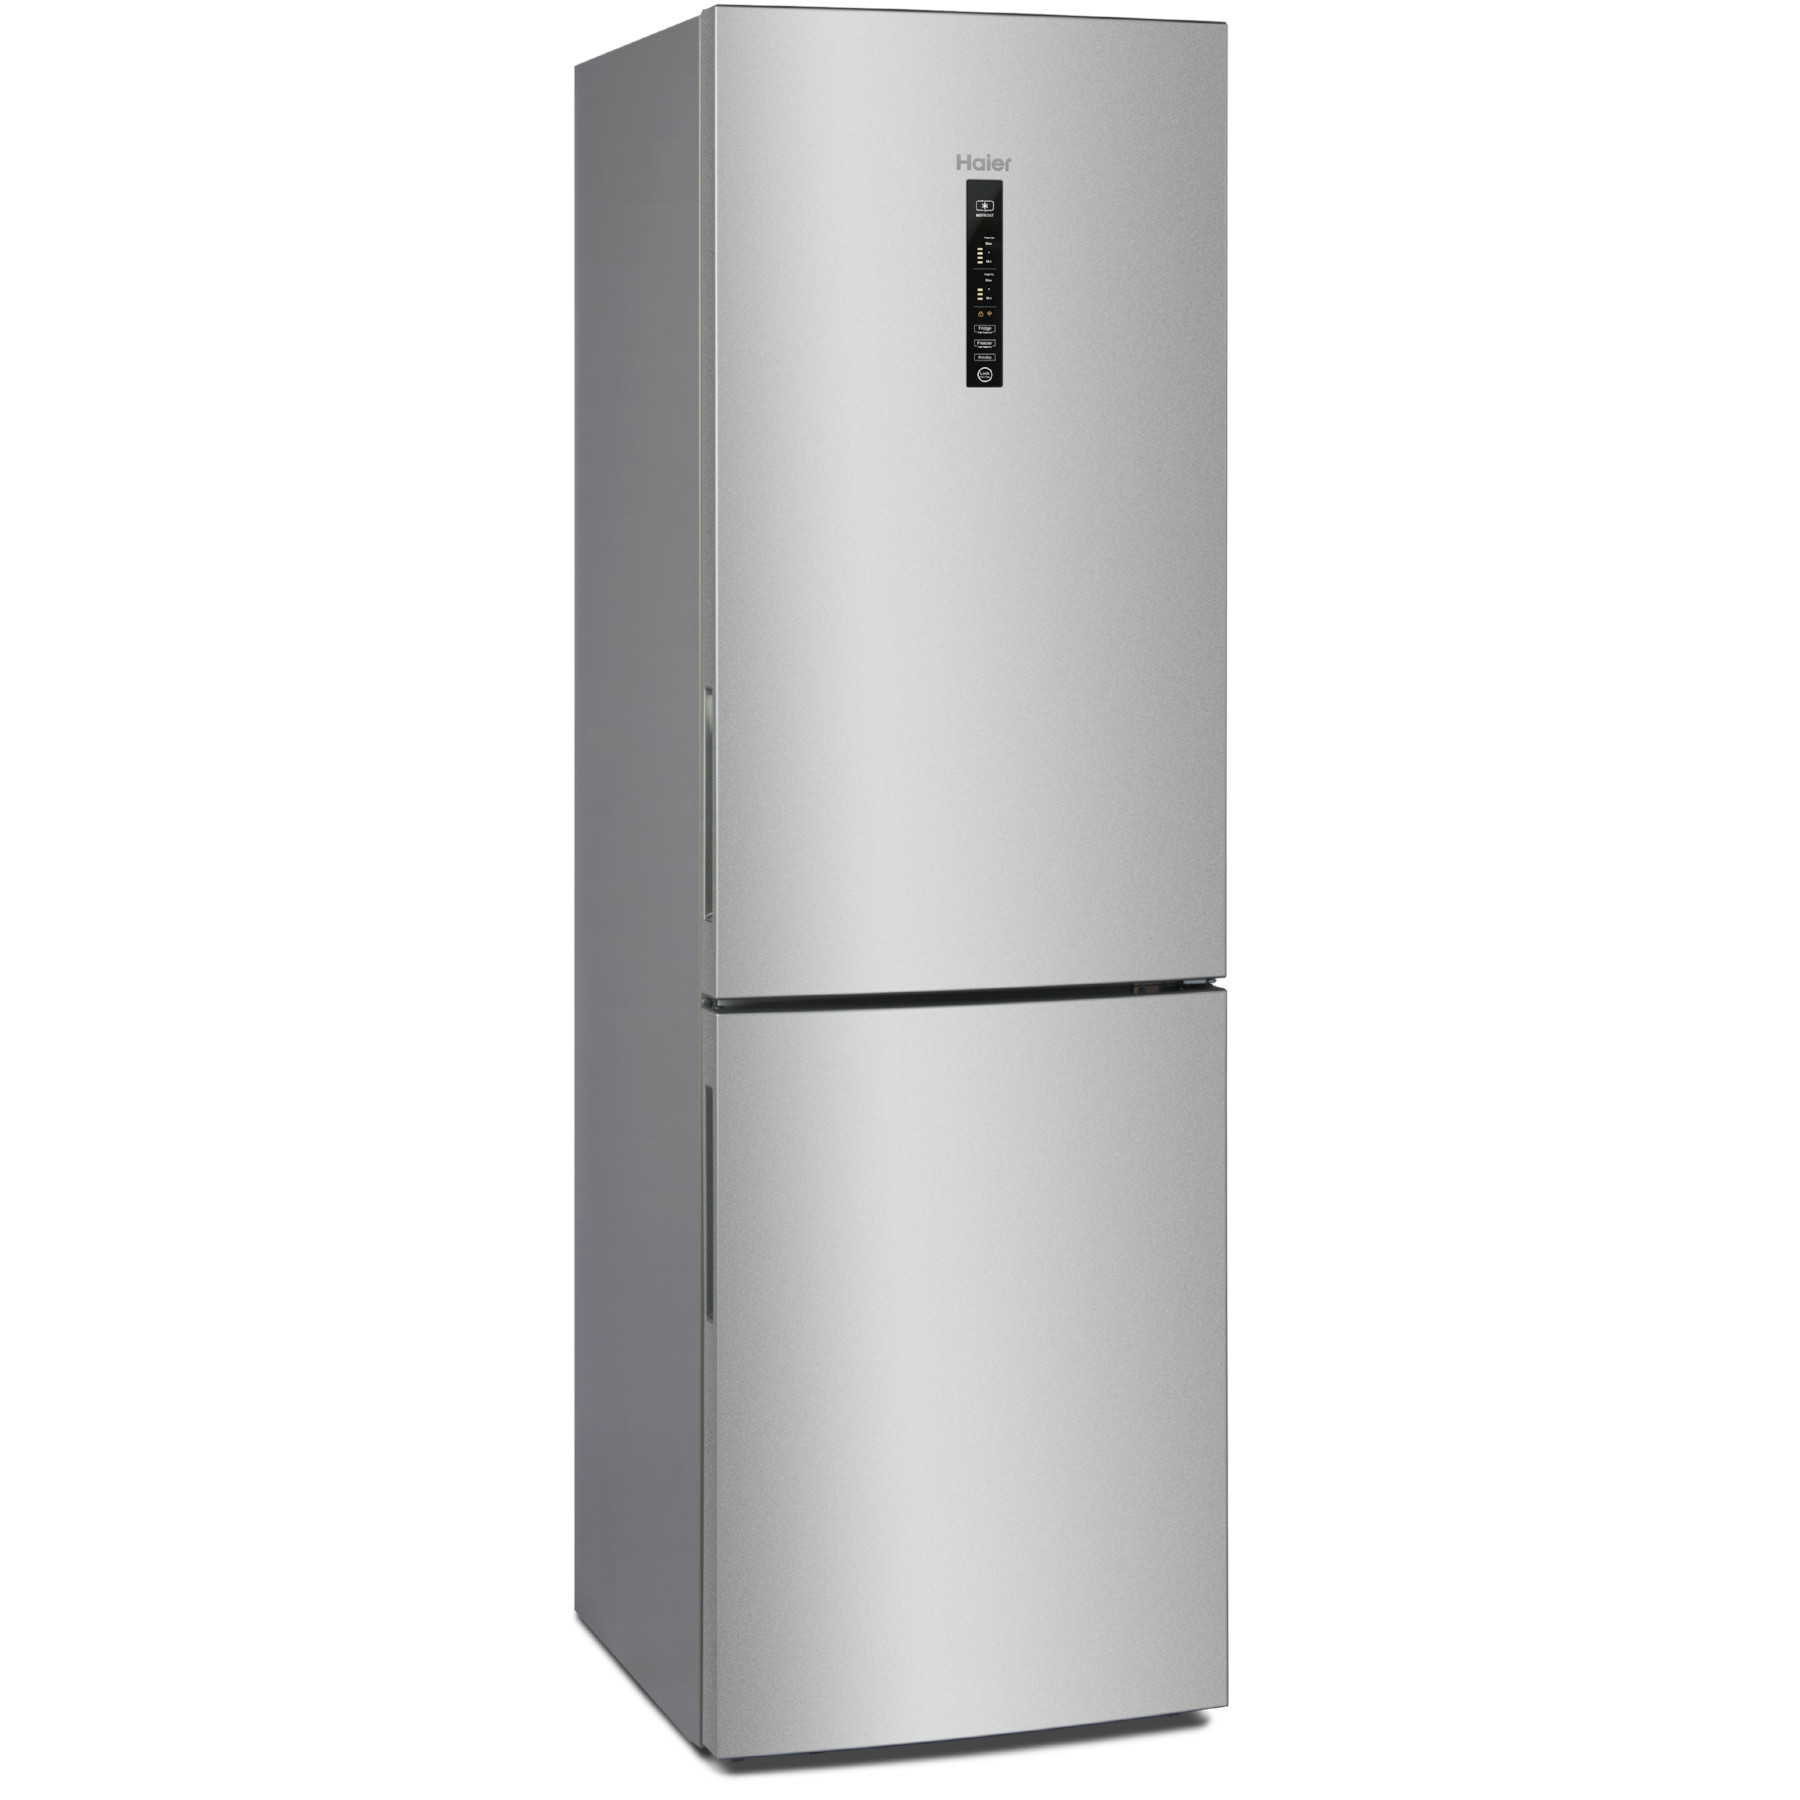 Производитель хайер отзывы. Холодильник Haier c3f532cmsg. Холодильник Haier c2f537cmsg. Холодильник Gorenje nrk6202axl4. Холодильник Gorenje nrk6192axl4.